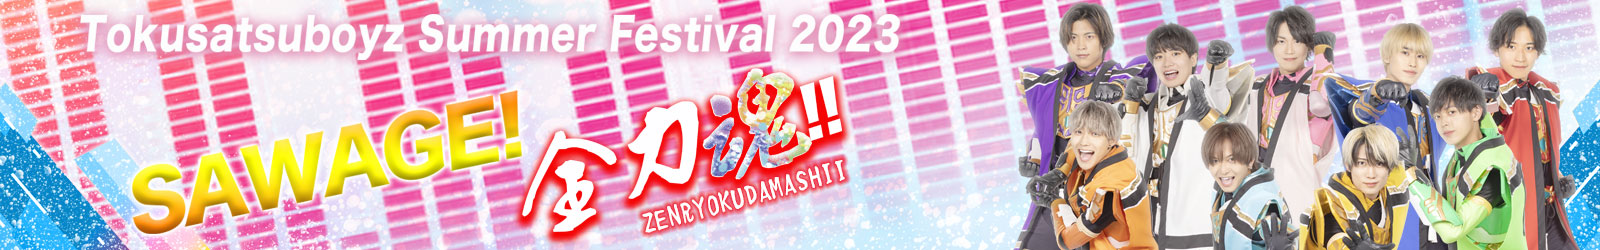 Tokusatsuboyz Summer Festival 2023 SAWAGE！全力魂！！